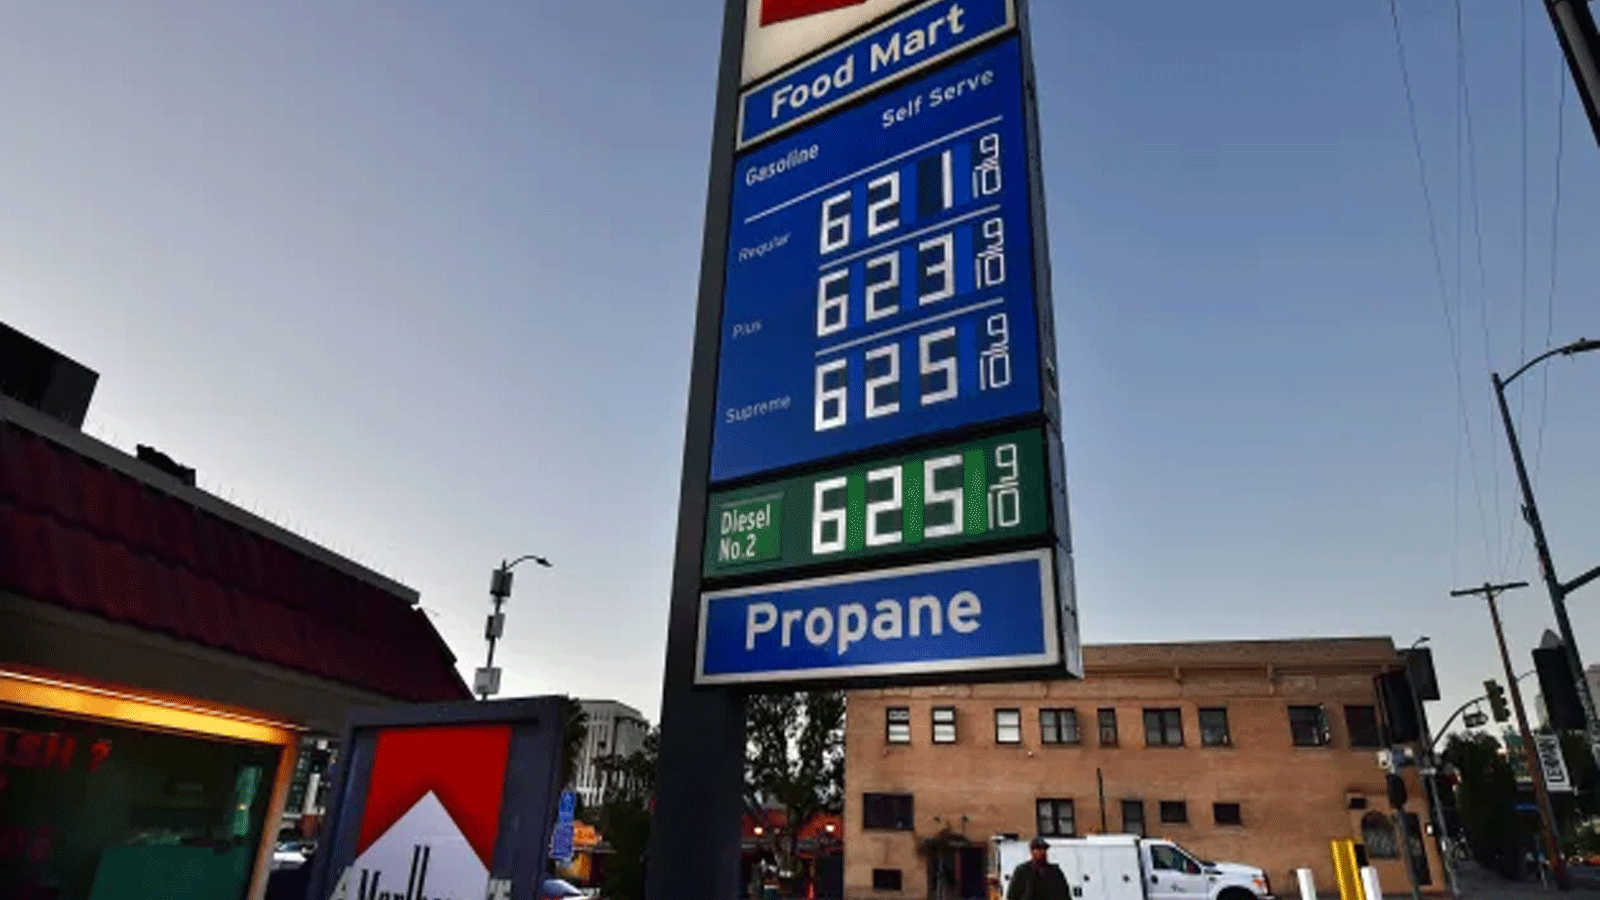 بلغت أسعار الغاز أكثر من 6 دولارات للغالون الواحد في محطة بنزين في لوس أنجلوس، كاليفورنيا في 23 شباط\ فبراير 2022.